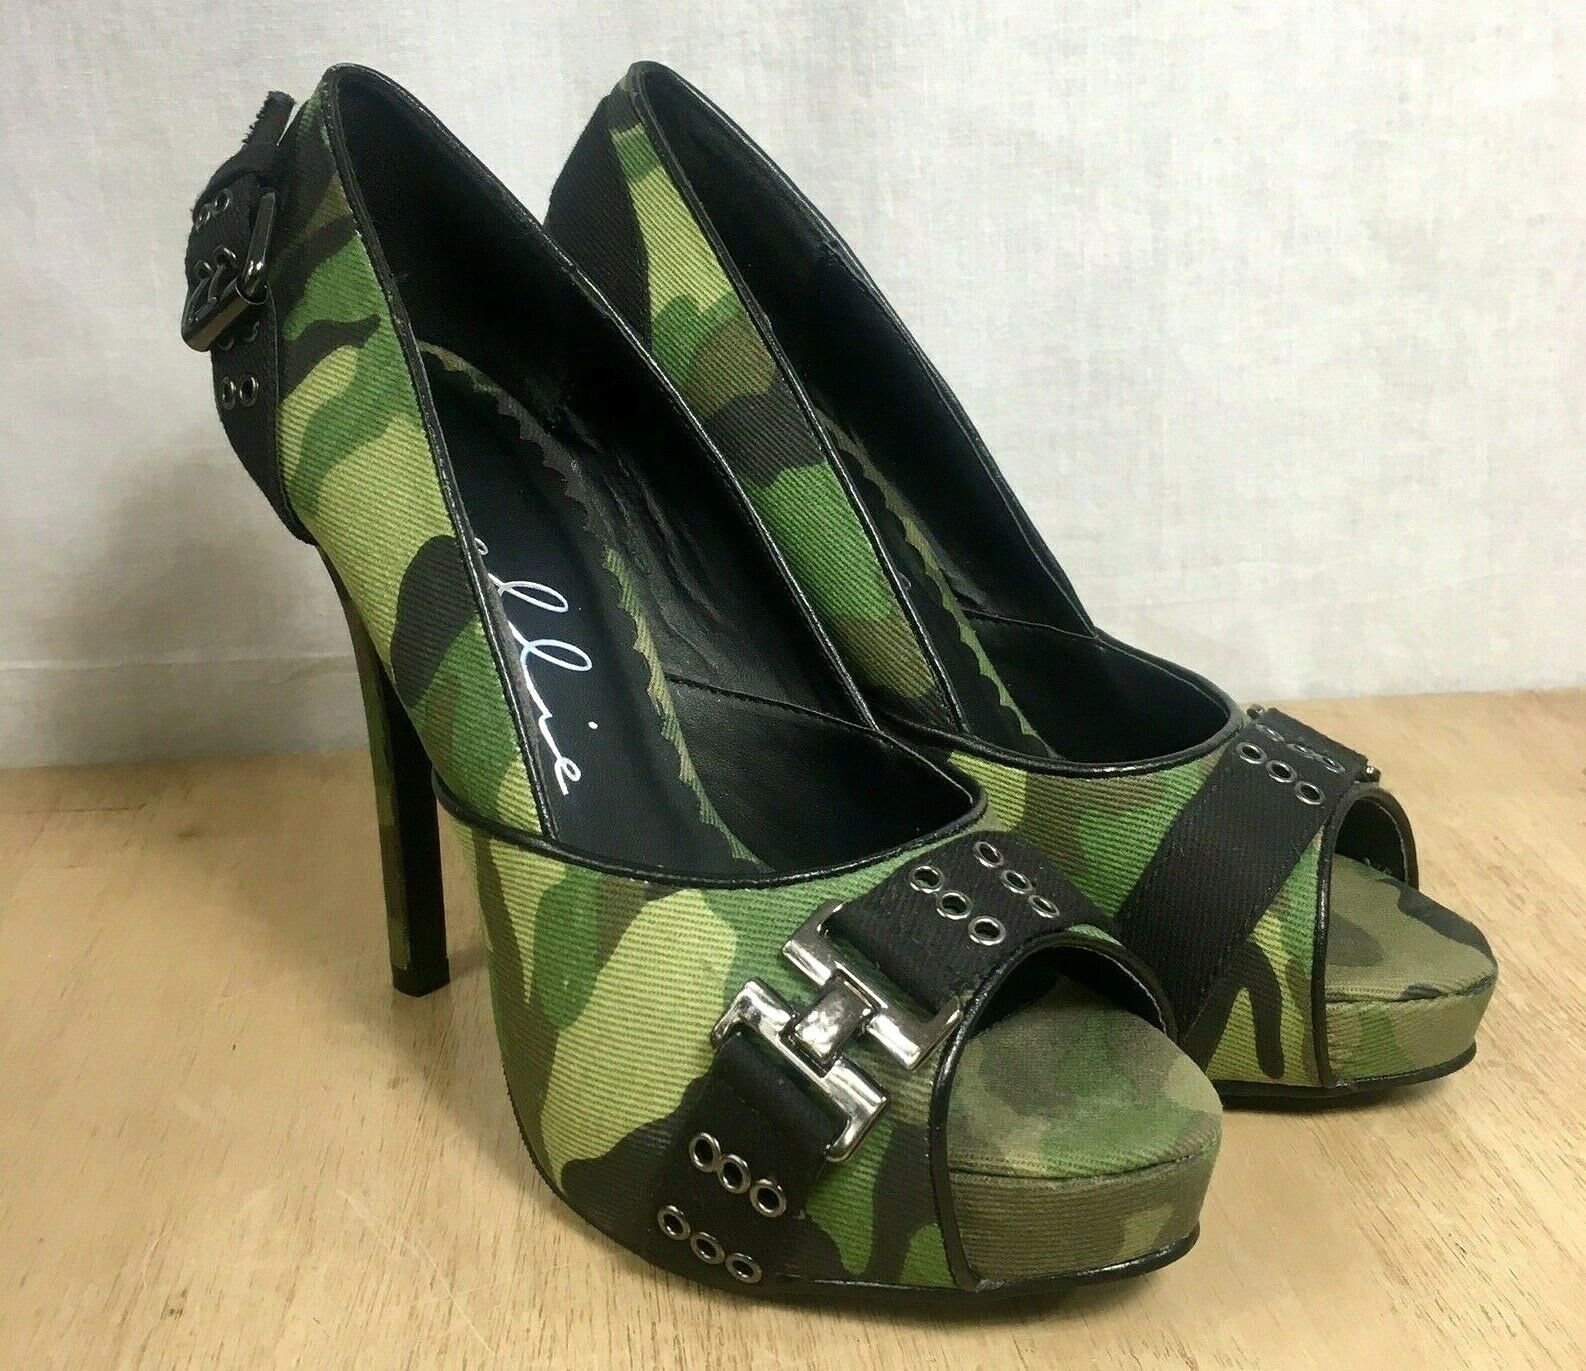 Ellie Camouflage Stiletto Pumps Size 7 Green Black Heels